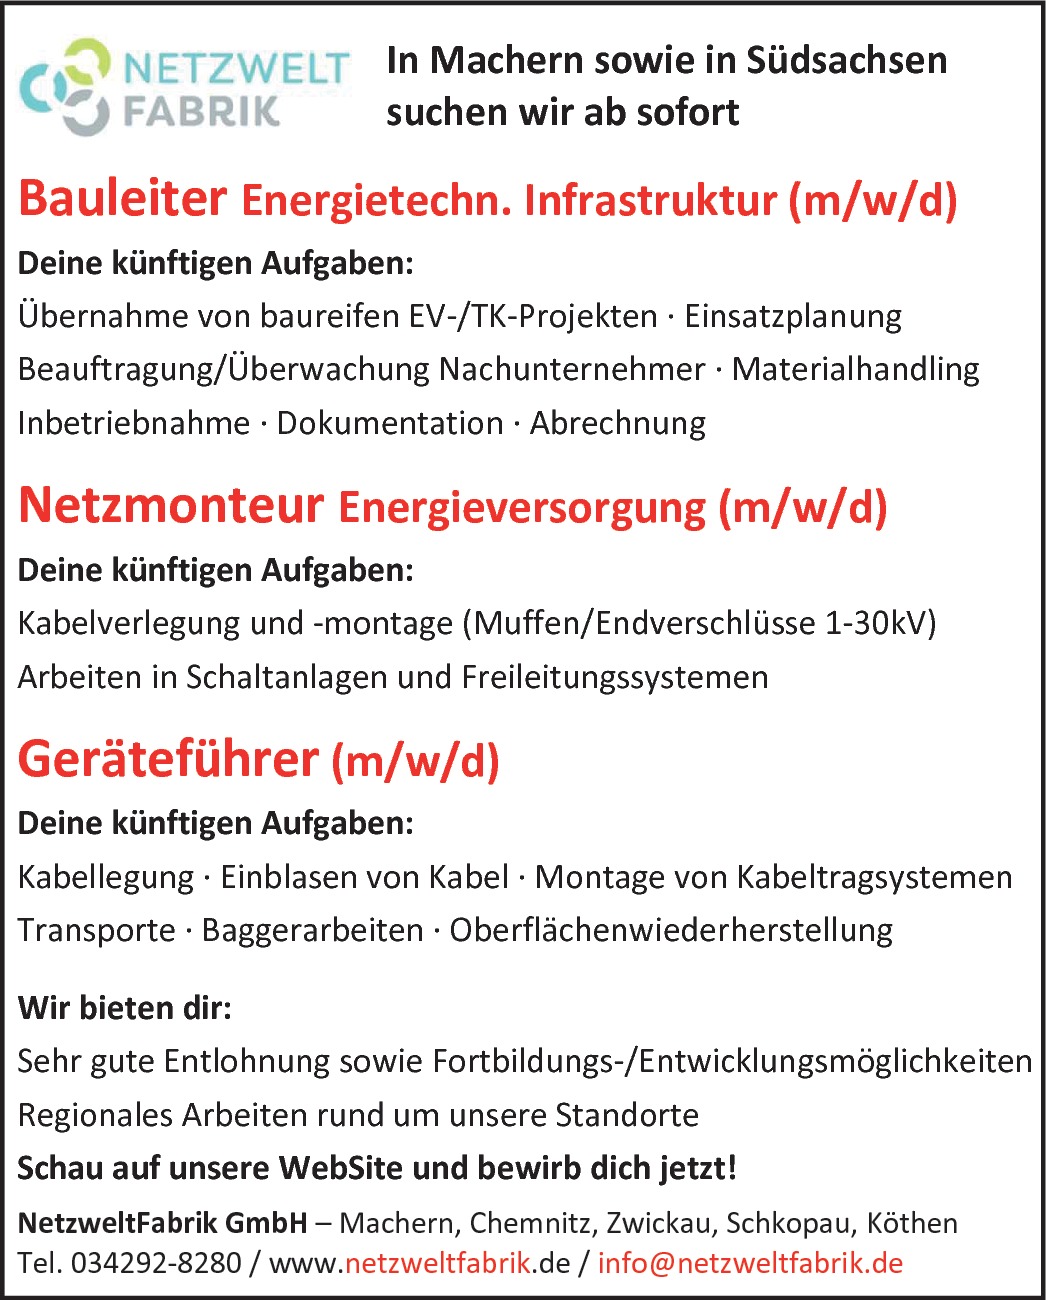 Bauleiter Energietechn. Infrastruktur (m/w/d)